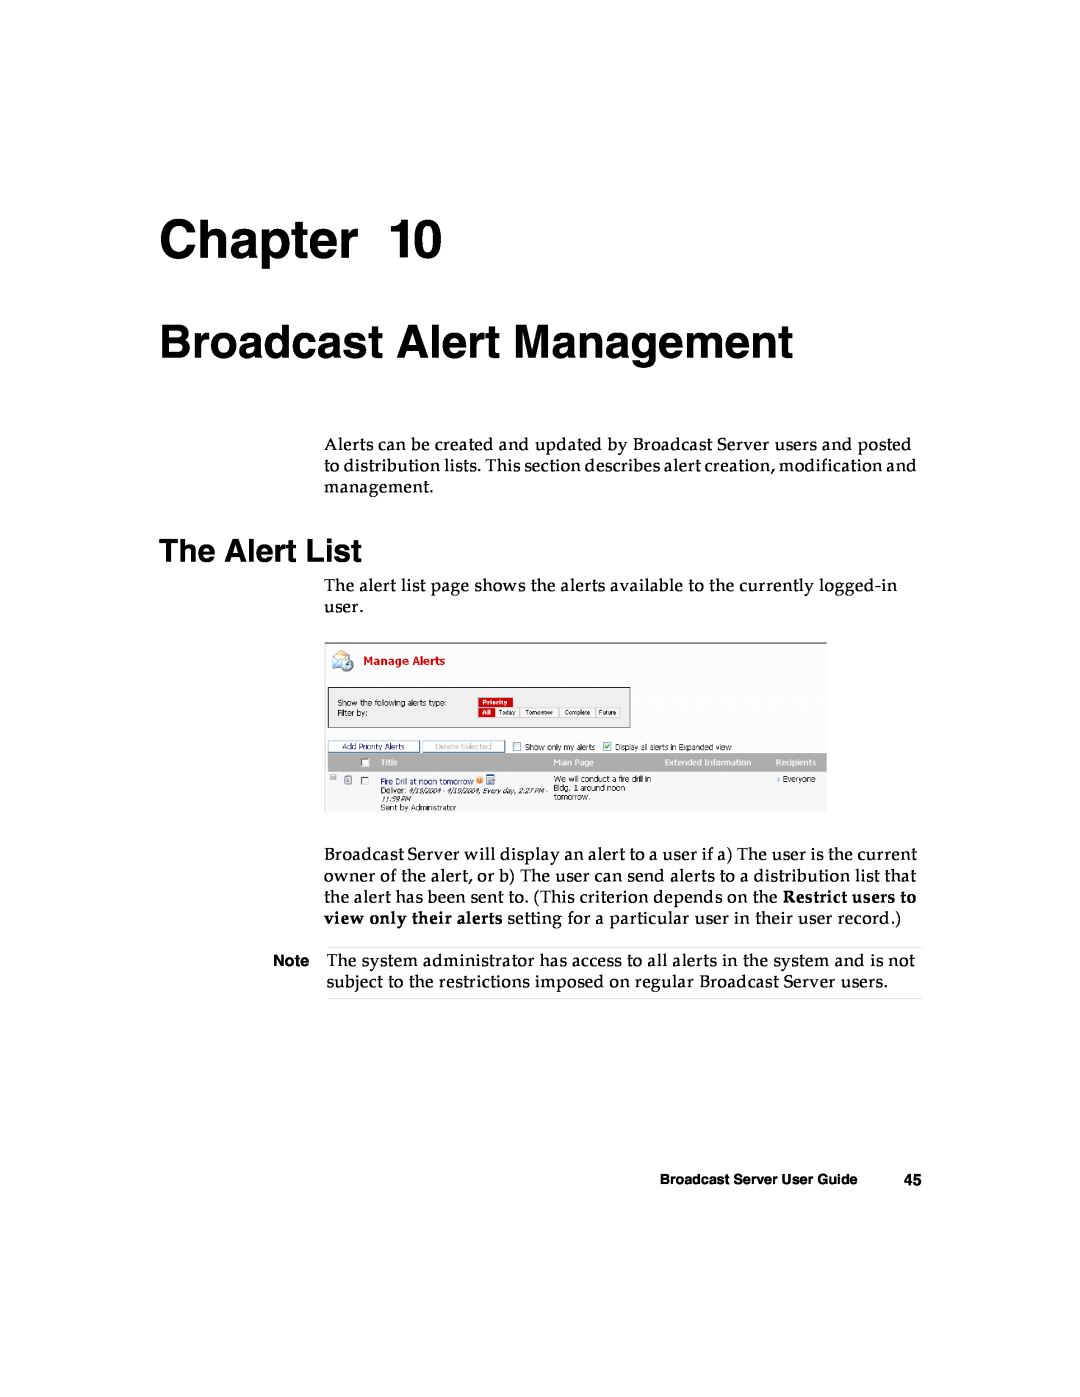 Nortel Networks Broadcast Server warranty Broadcast Alert Management, The Alert List, Chapter 